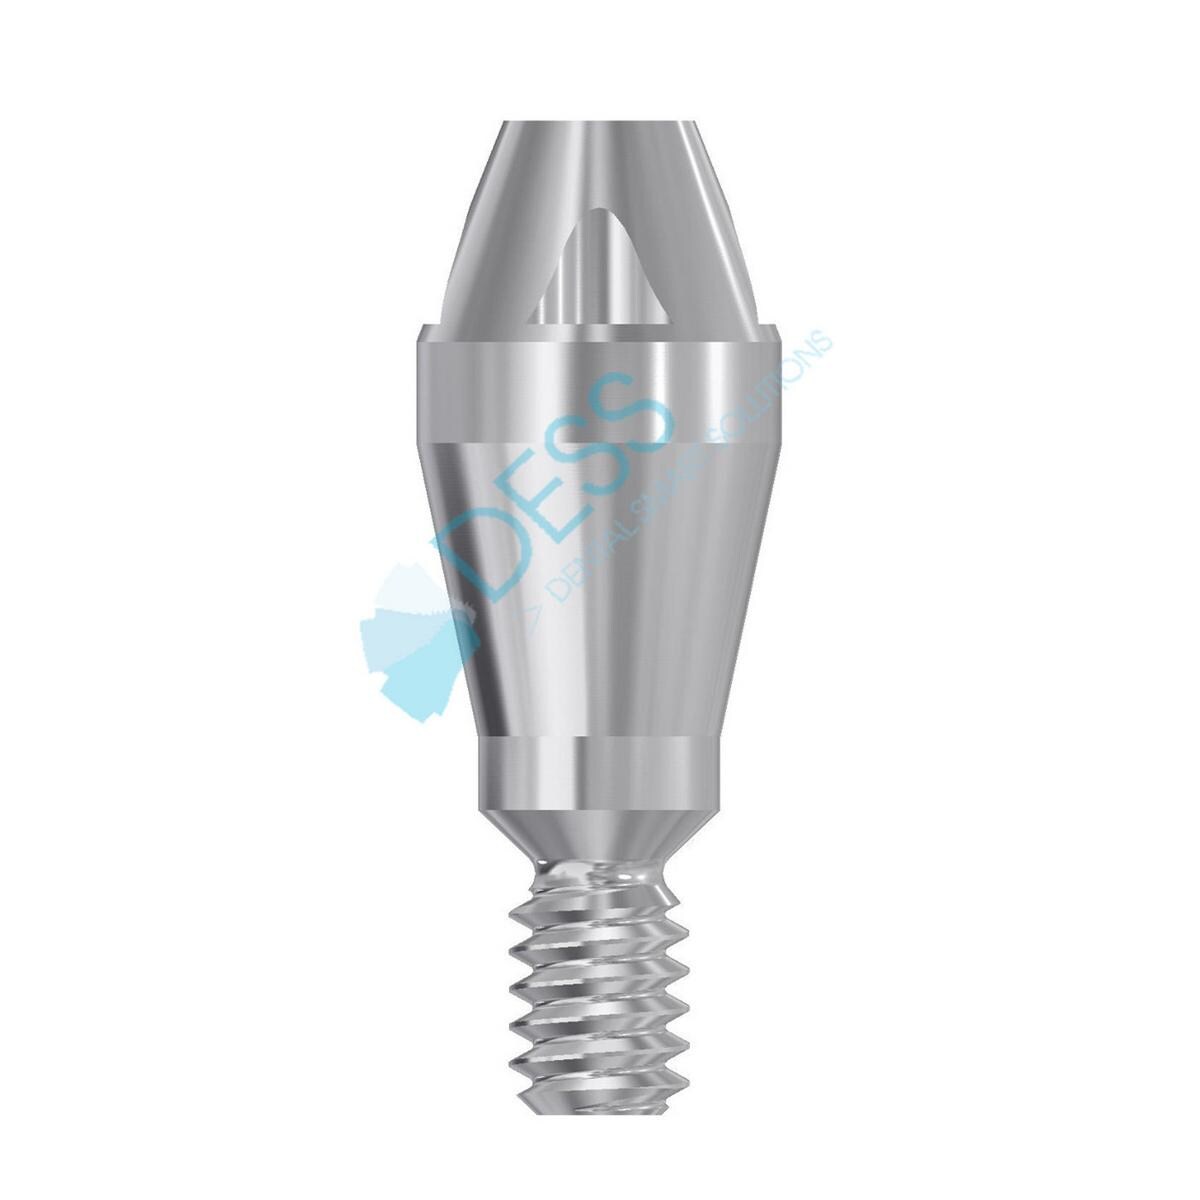 UniAbutment® Aqua RP Ø 3,5 - 4,0 mm - kompatibel mit Astra Tech™ Osseospeed™ - Höhe 2,0 mm, 45° gewinkelt